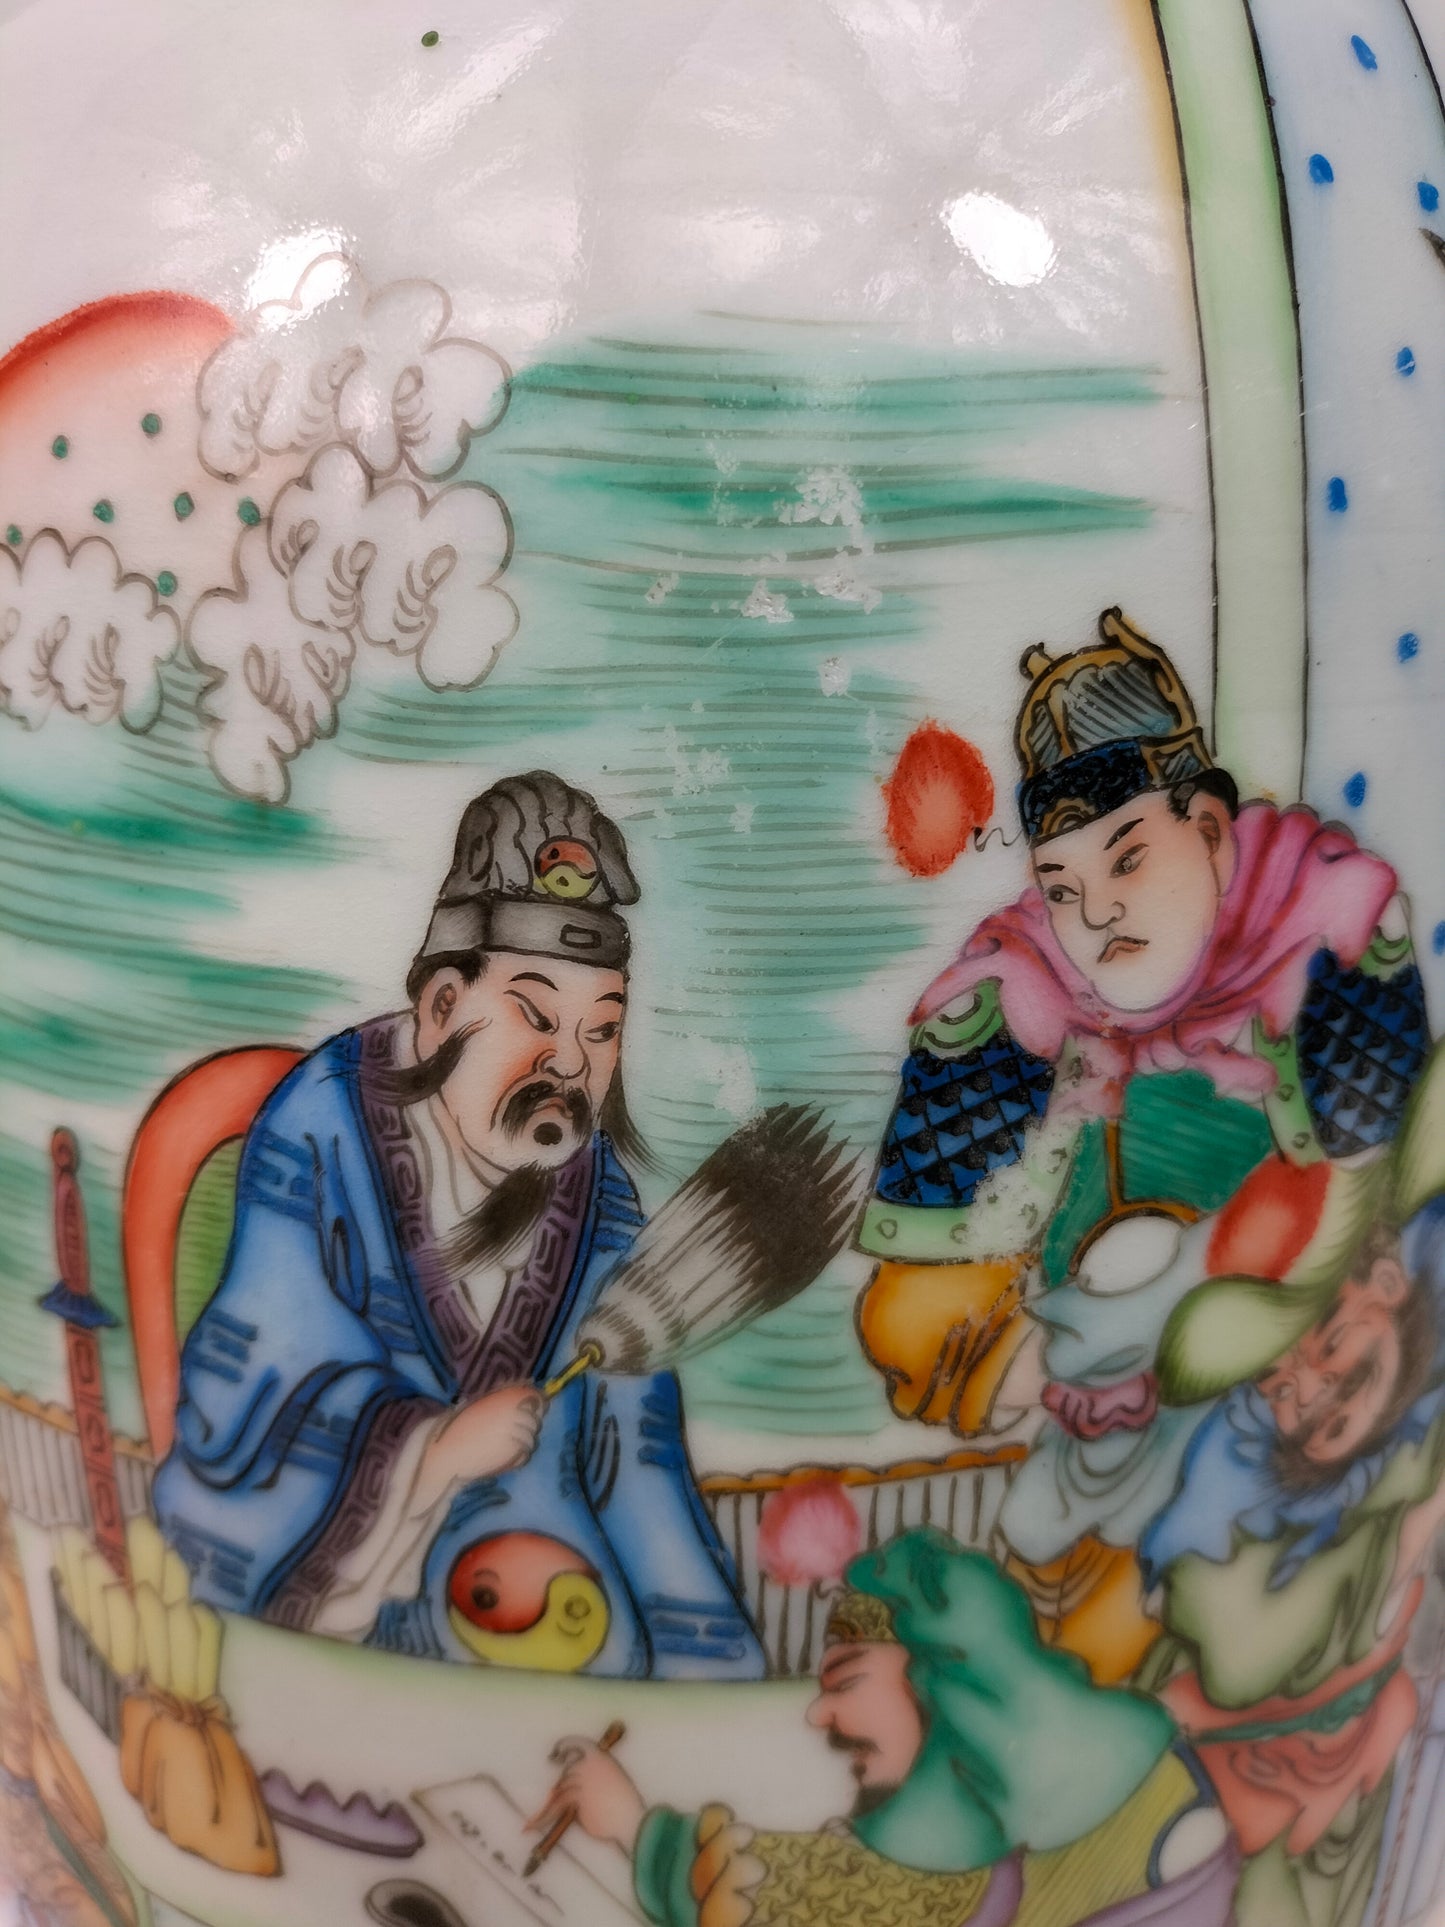 Grande vaso chinês antigo decorado com cenas do Imperador // Período da República (1912-1949)